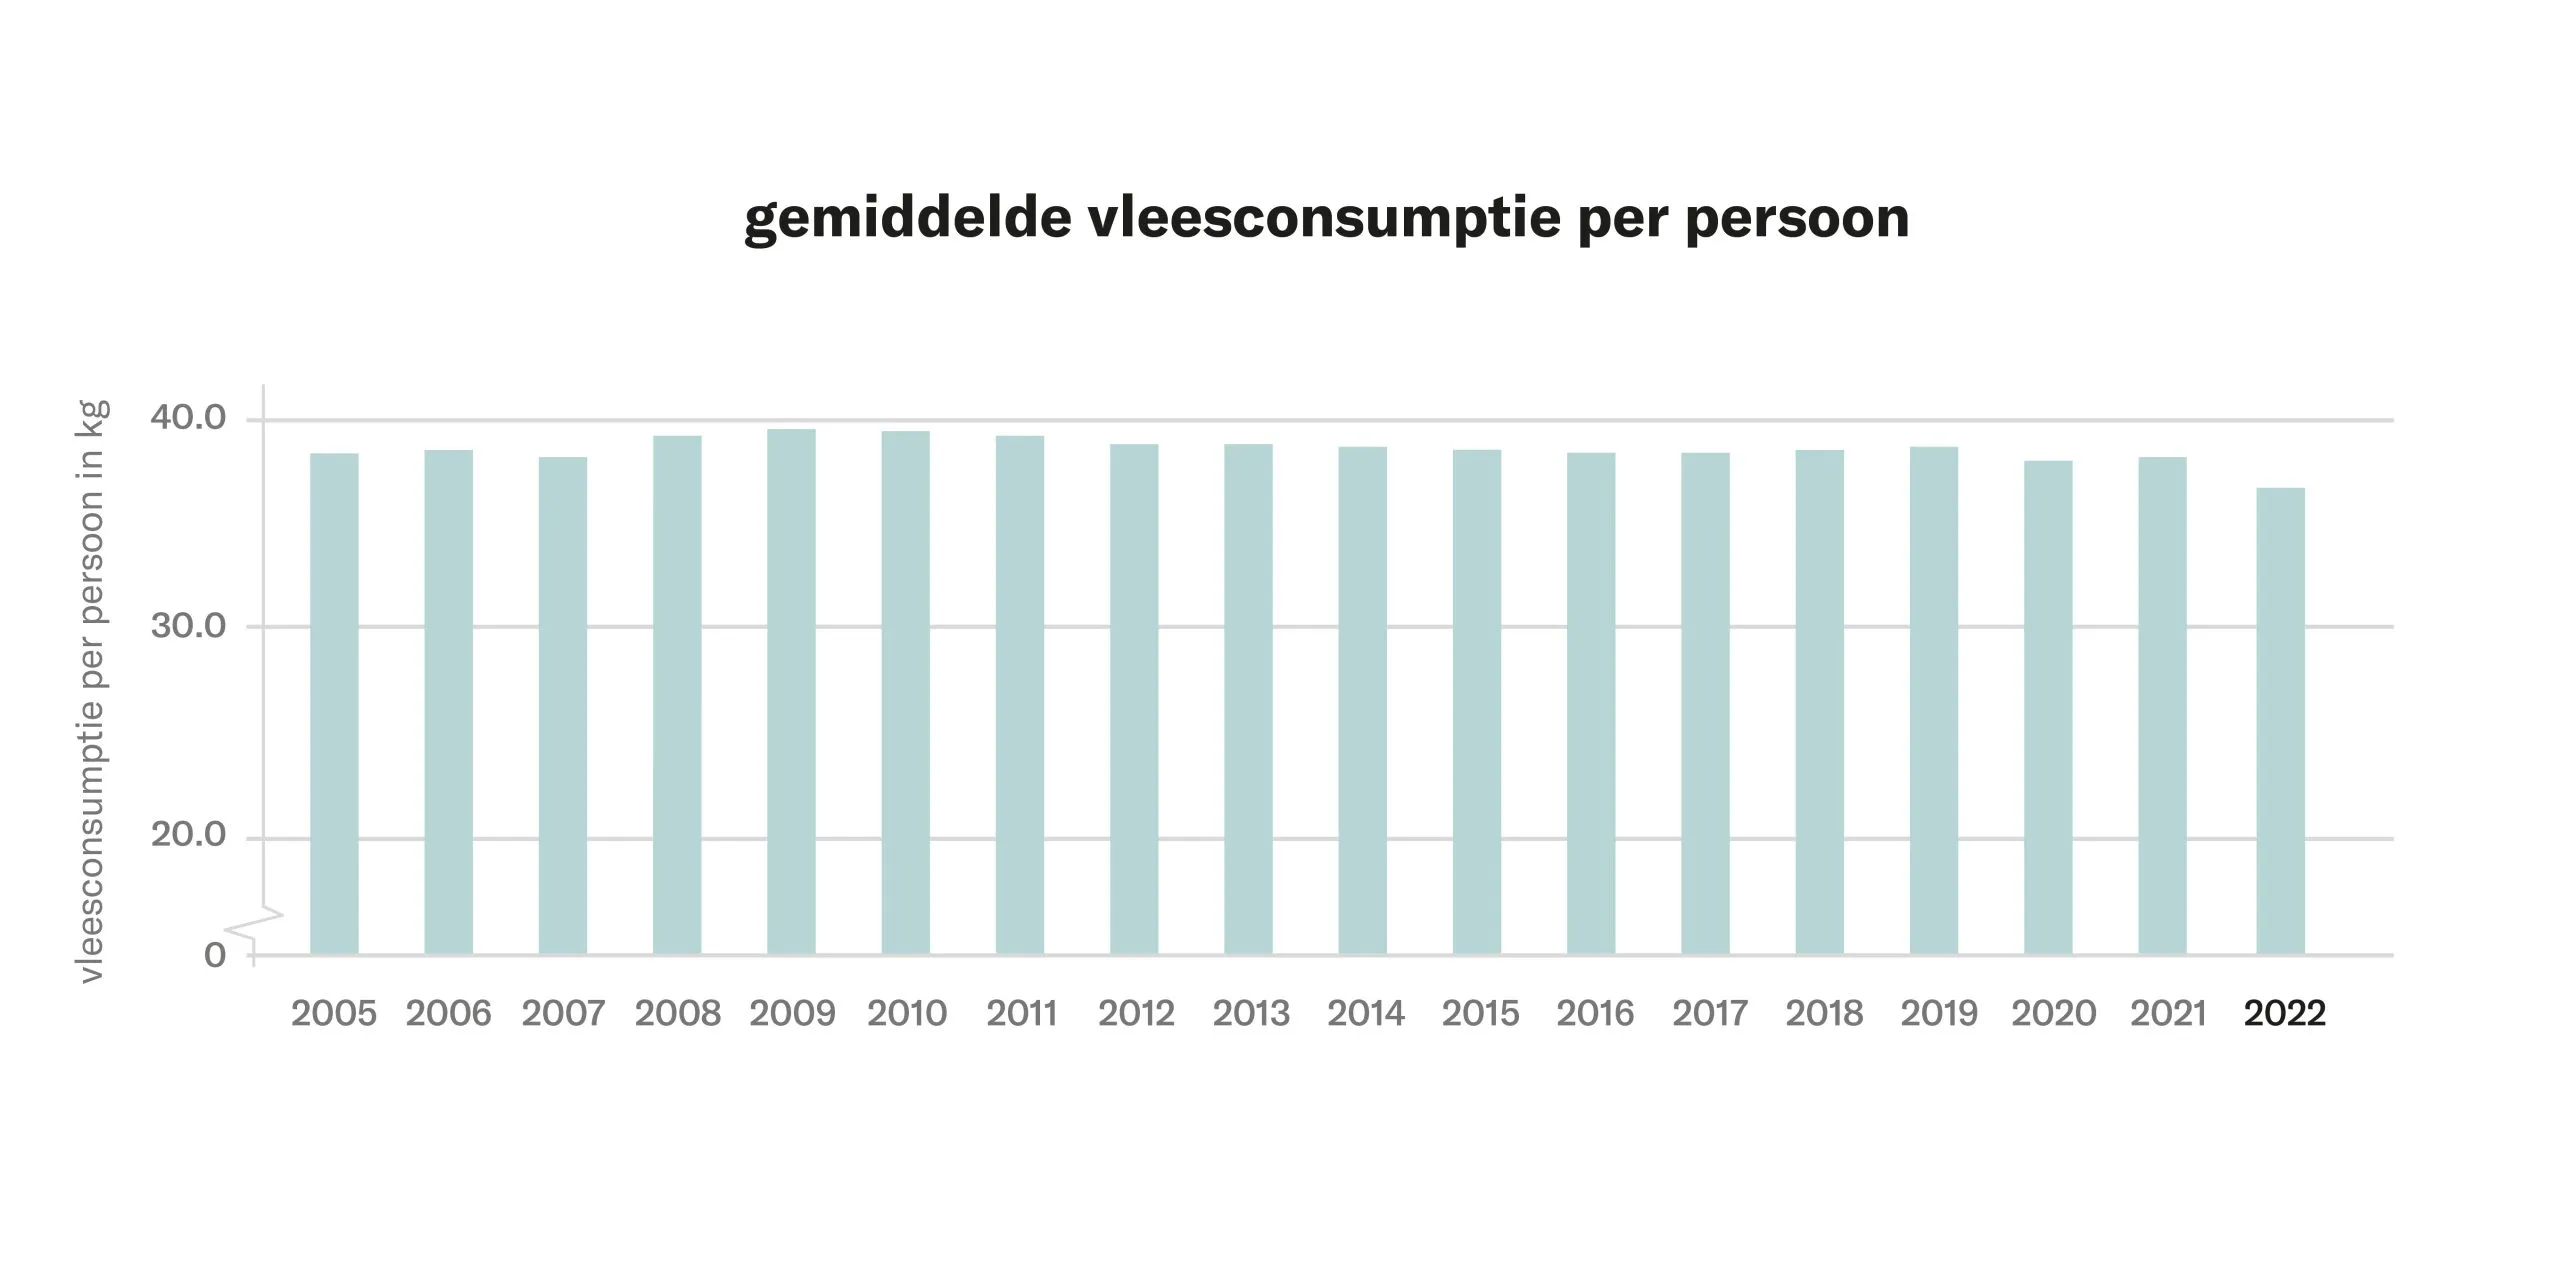 Beeld: grafiek met de gemiddelde vleesconsumptie per jaar